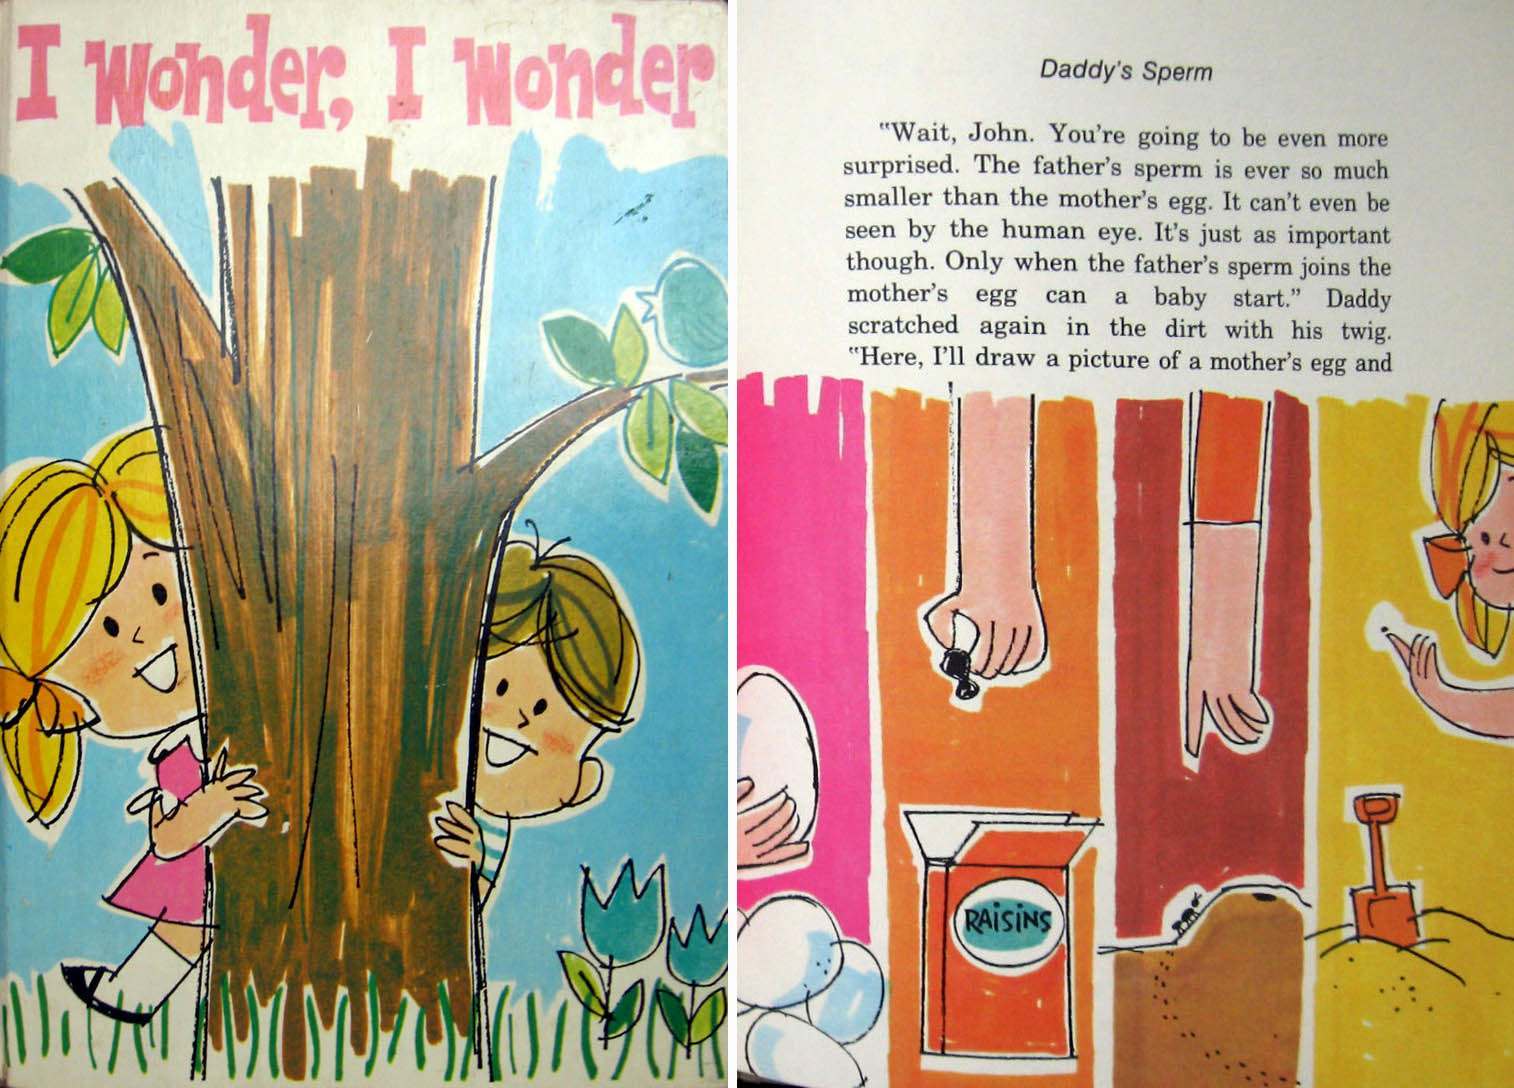 I Wonder, I Wonder, by Marguerite Kurth Frey